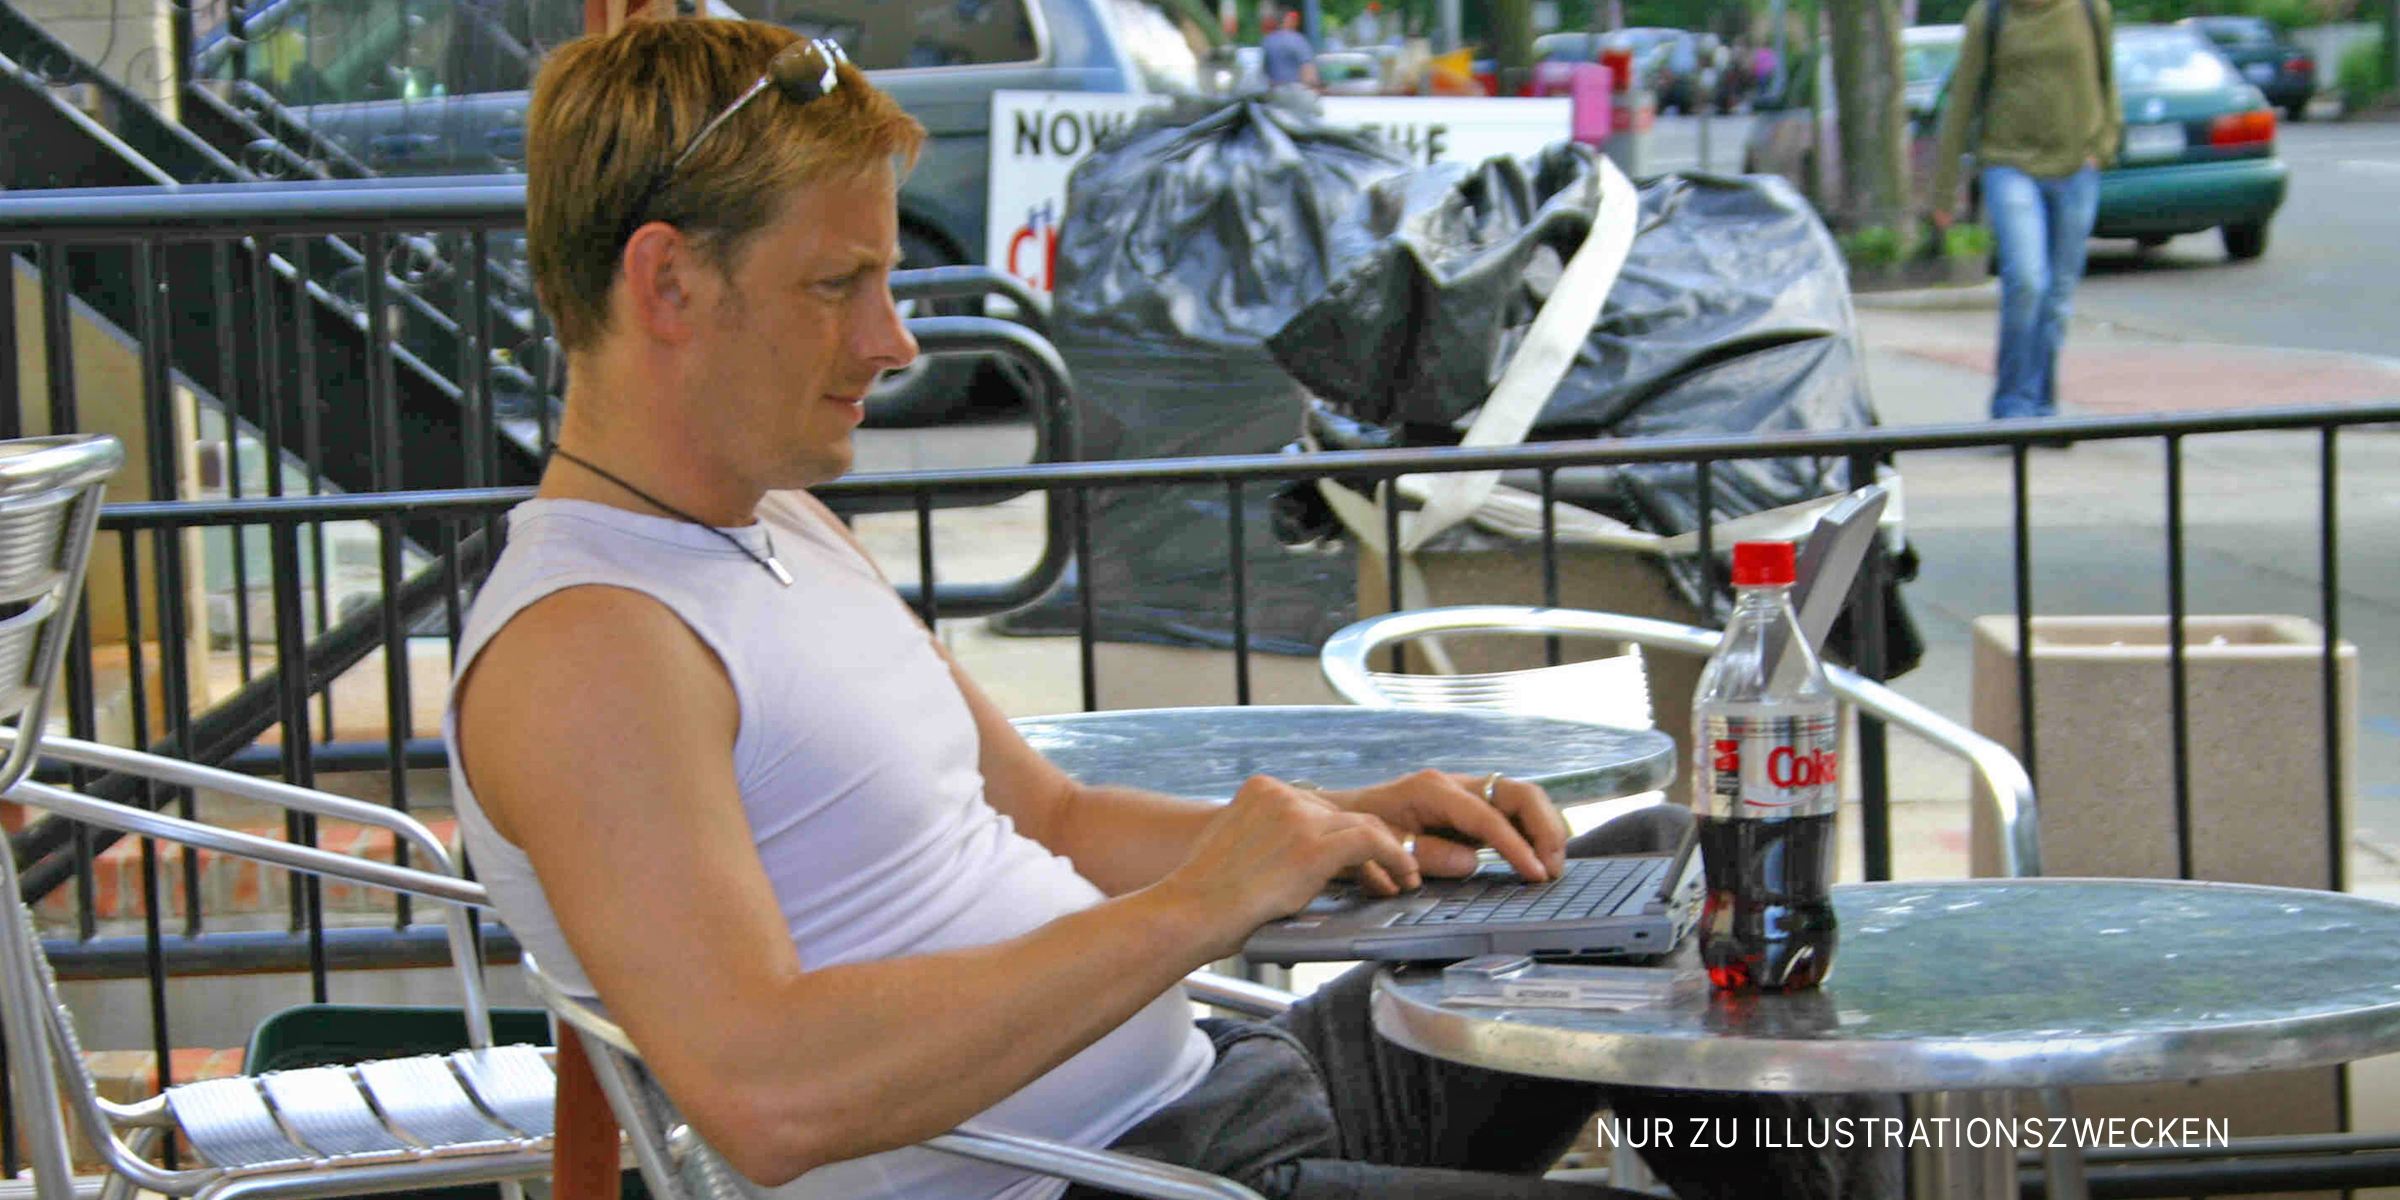 Mann am Kaffeetisch sitzend | Quelle: Flickr / Elvert Barnes (CC BY 2.0)